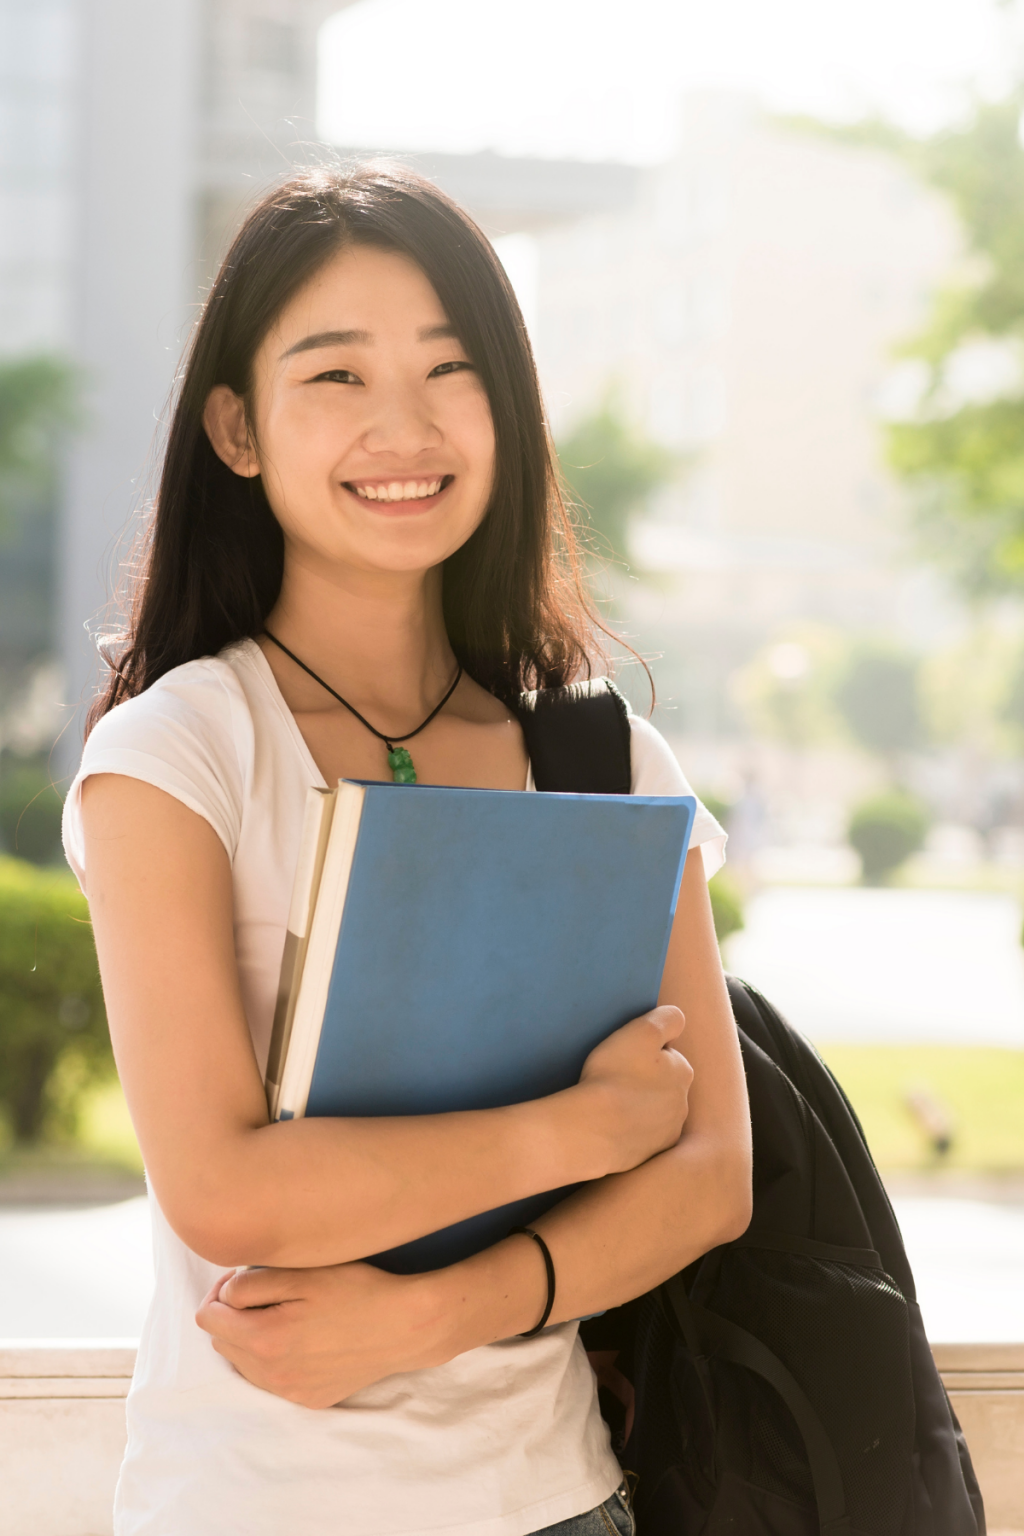 Студентка азиатка улыбающаяся. Азиатские девушки финансы. Фото студентов азиатской внешности.